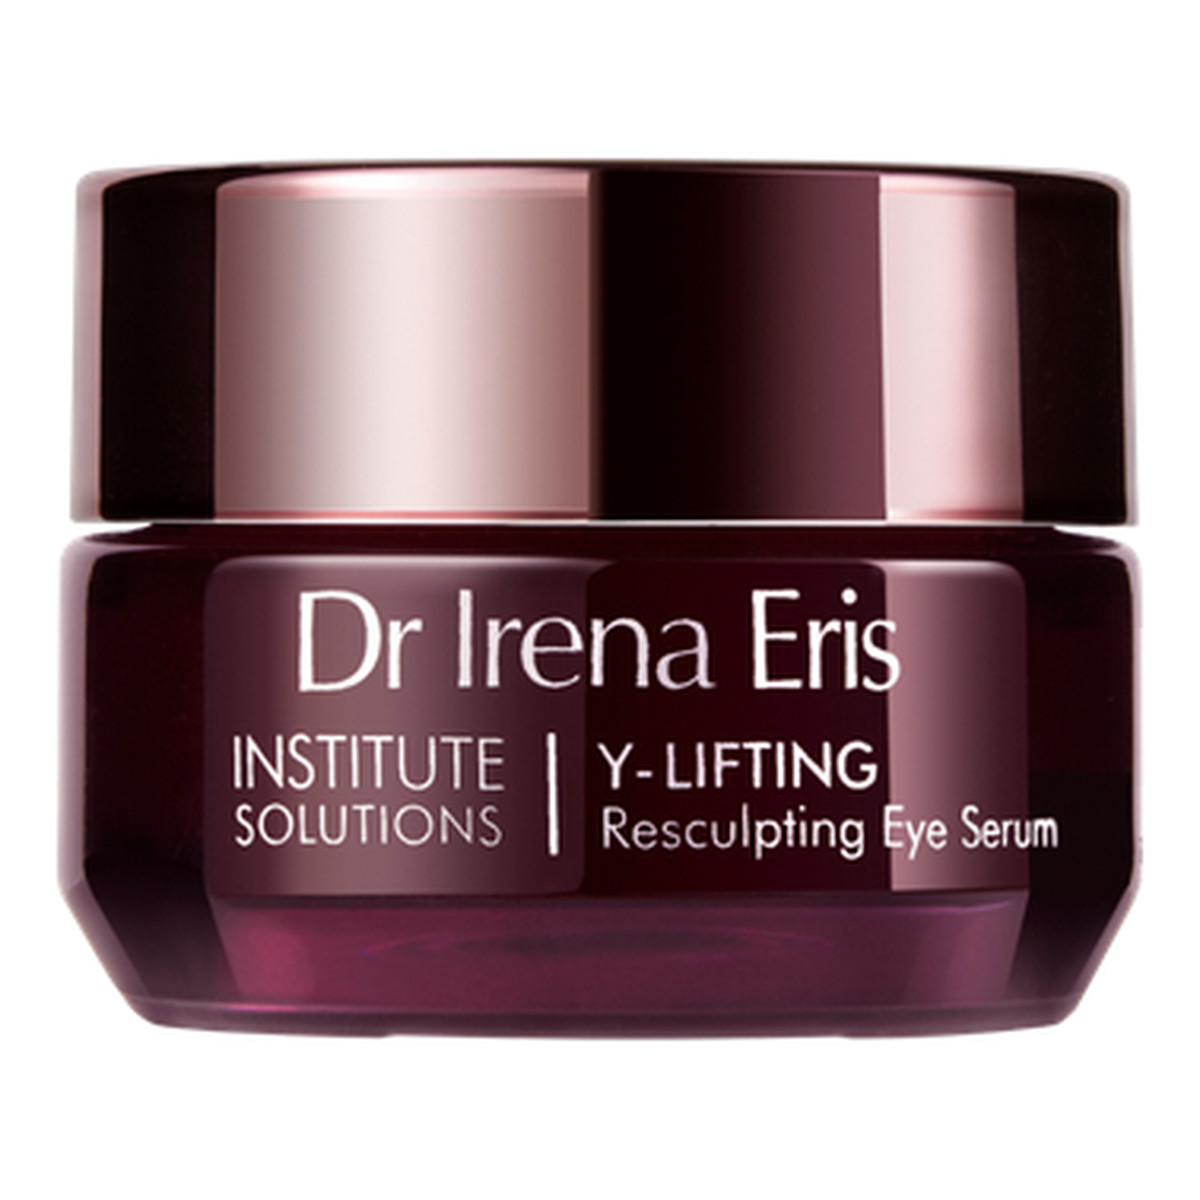 Dr Irena Eris Y-lifting Liftingujące serum pod oczy w kremie 15ml